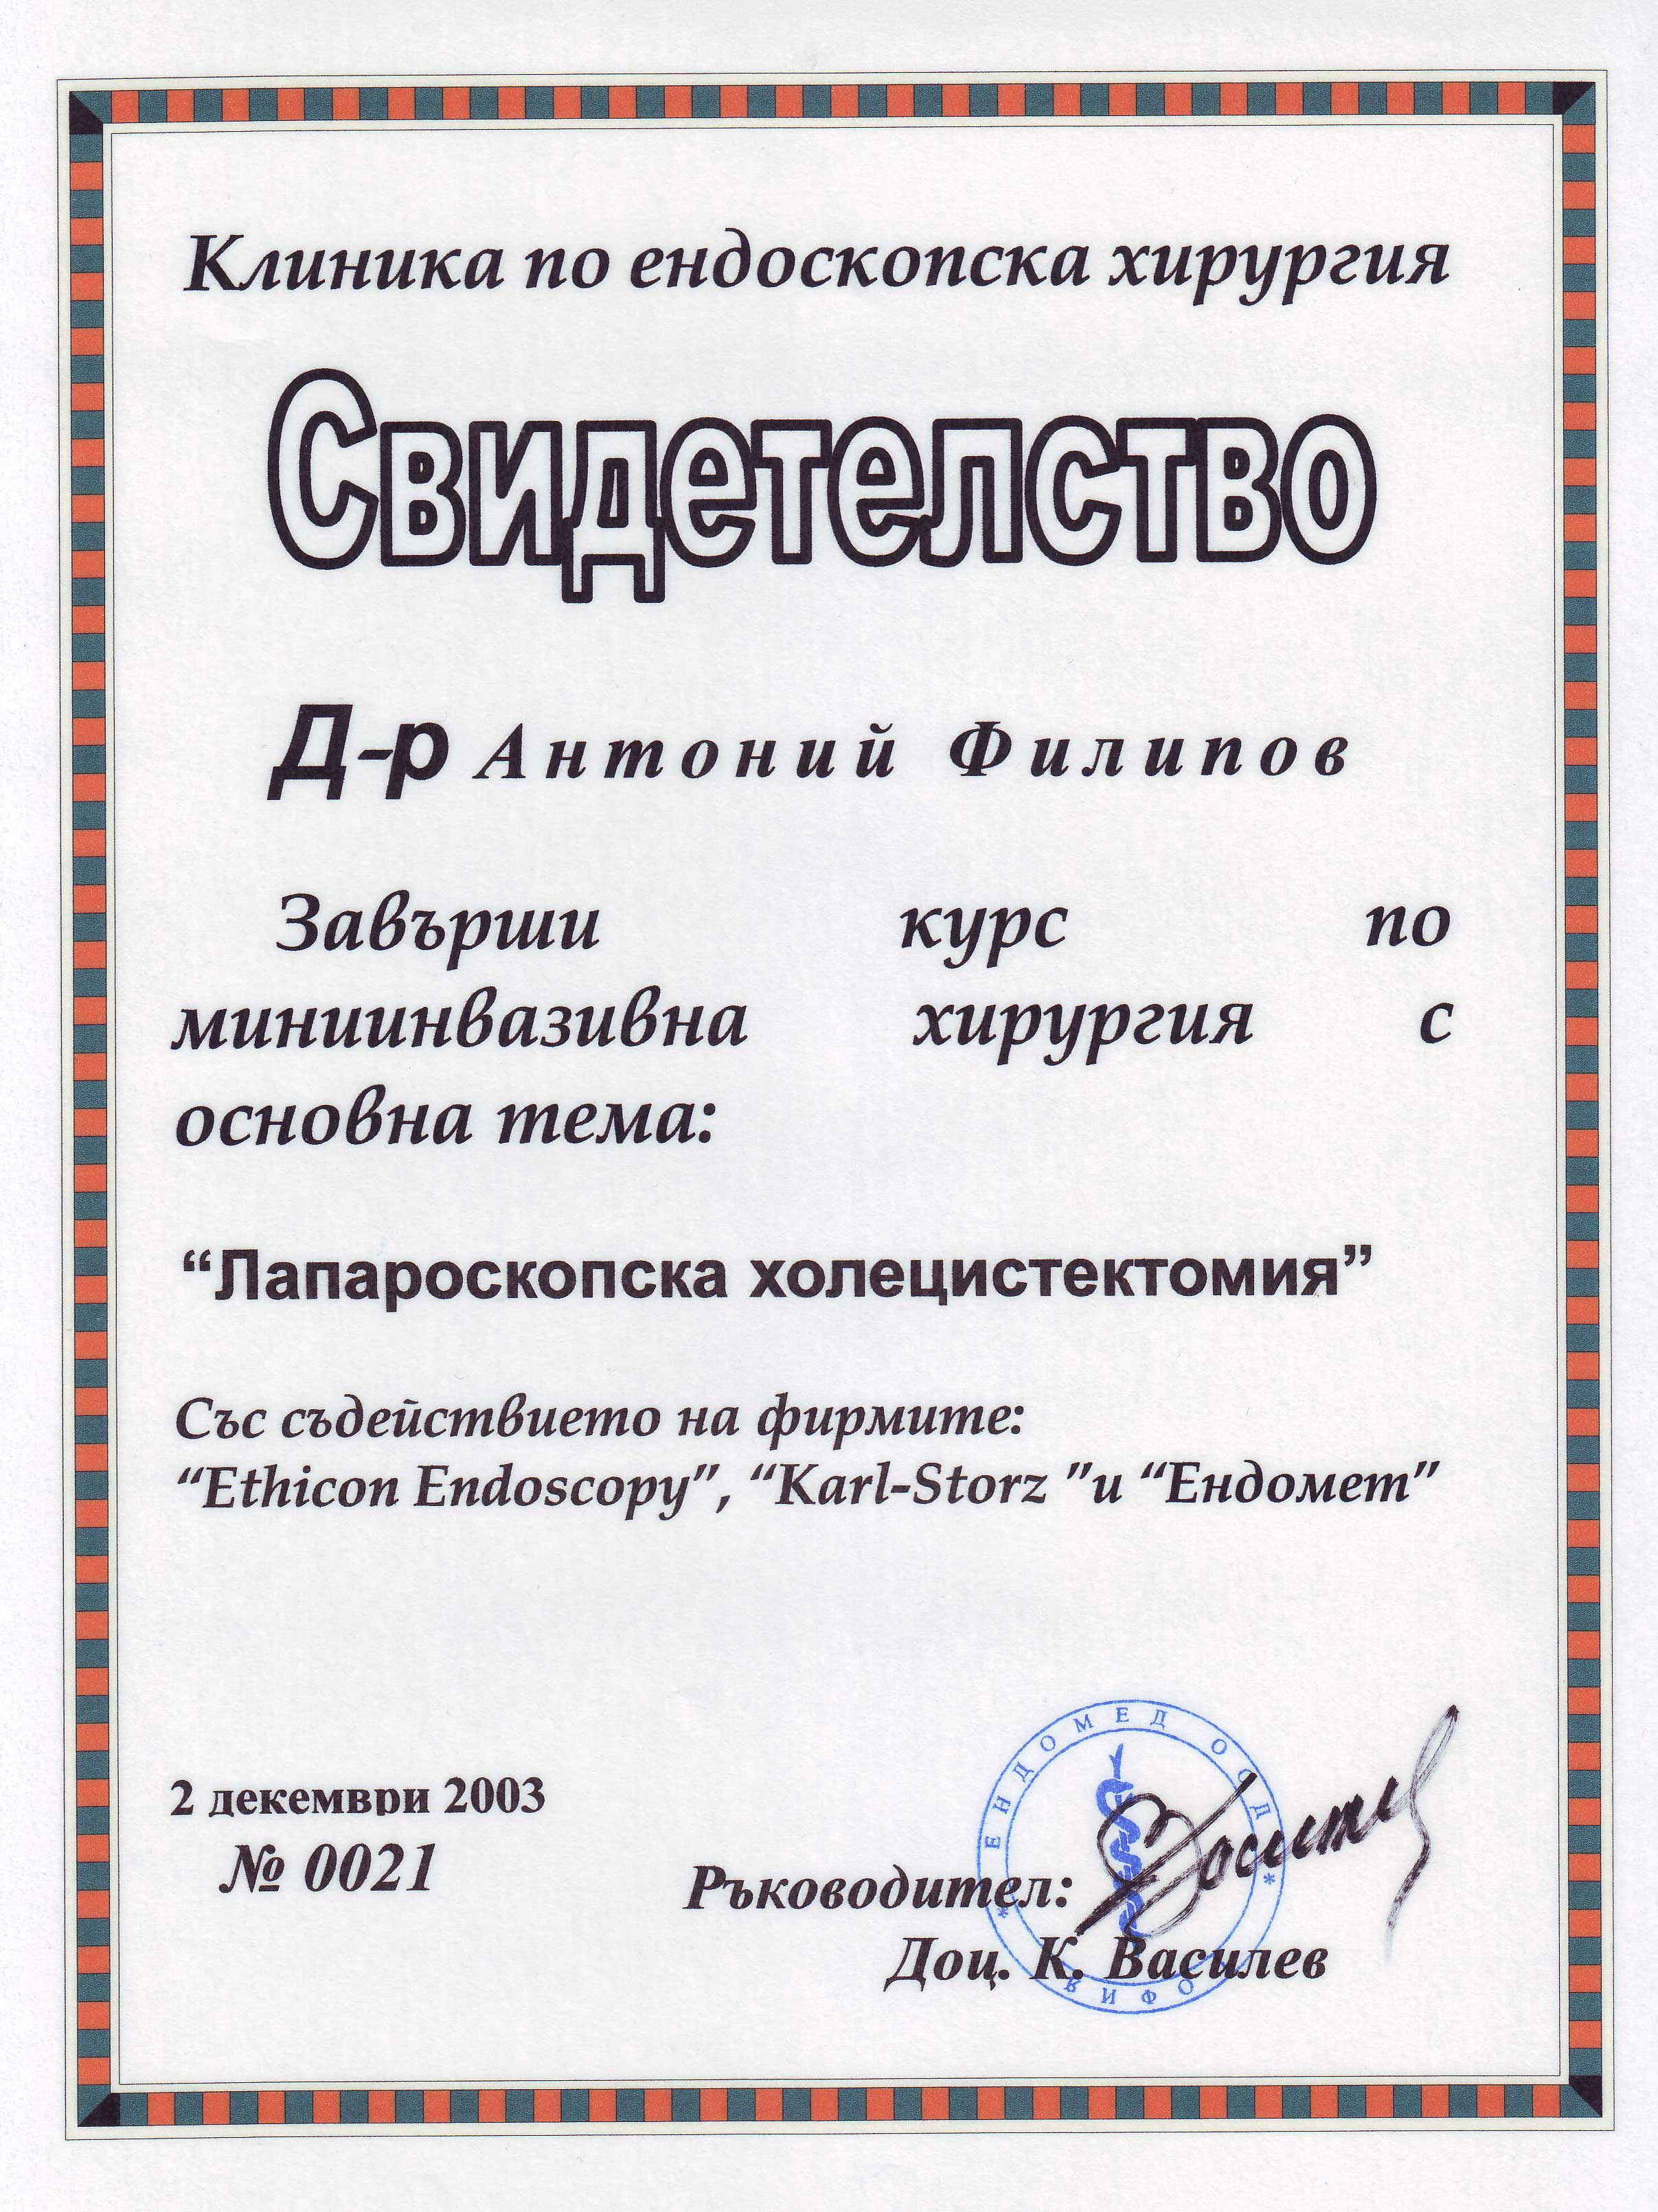 Сертификат.Клиника по ендоскопска хирургия